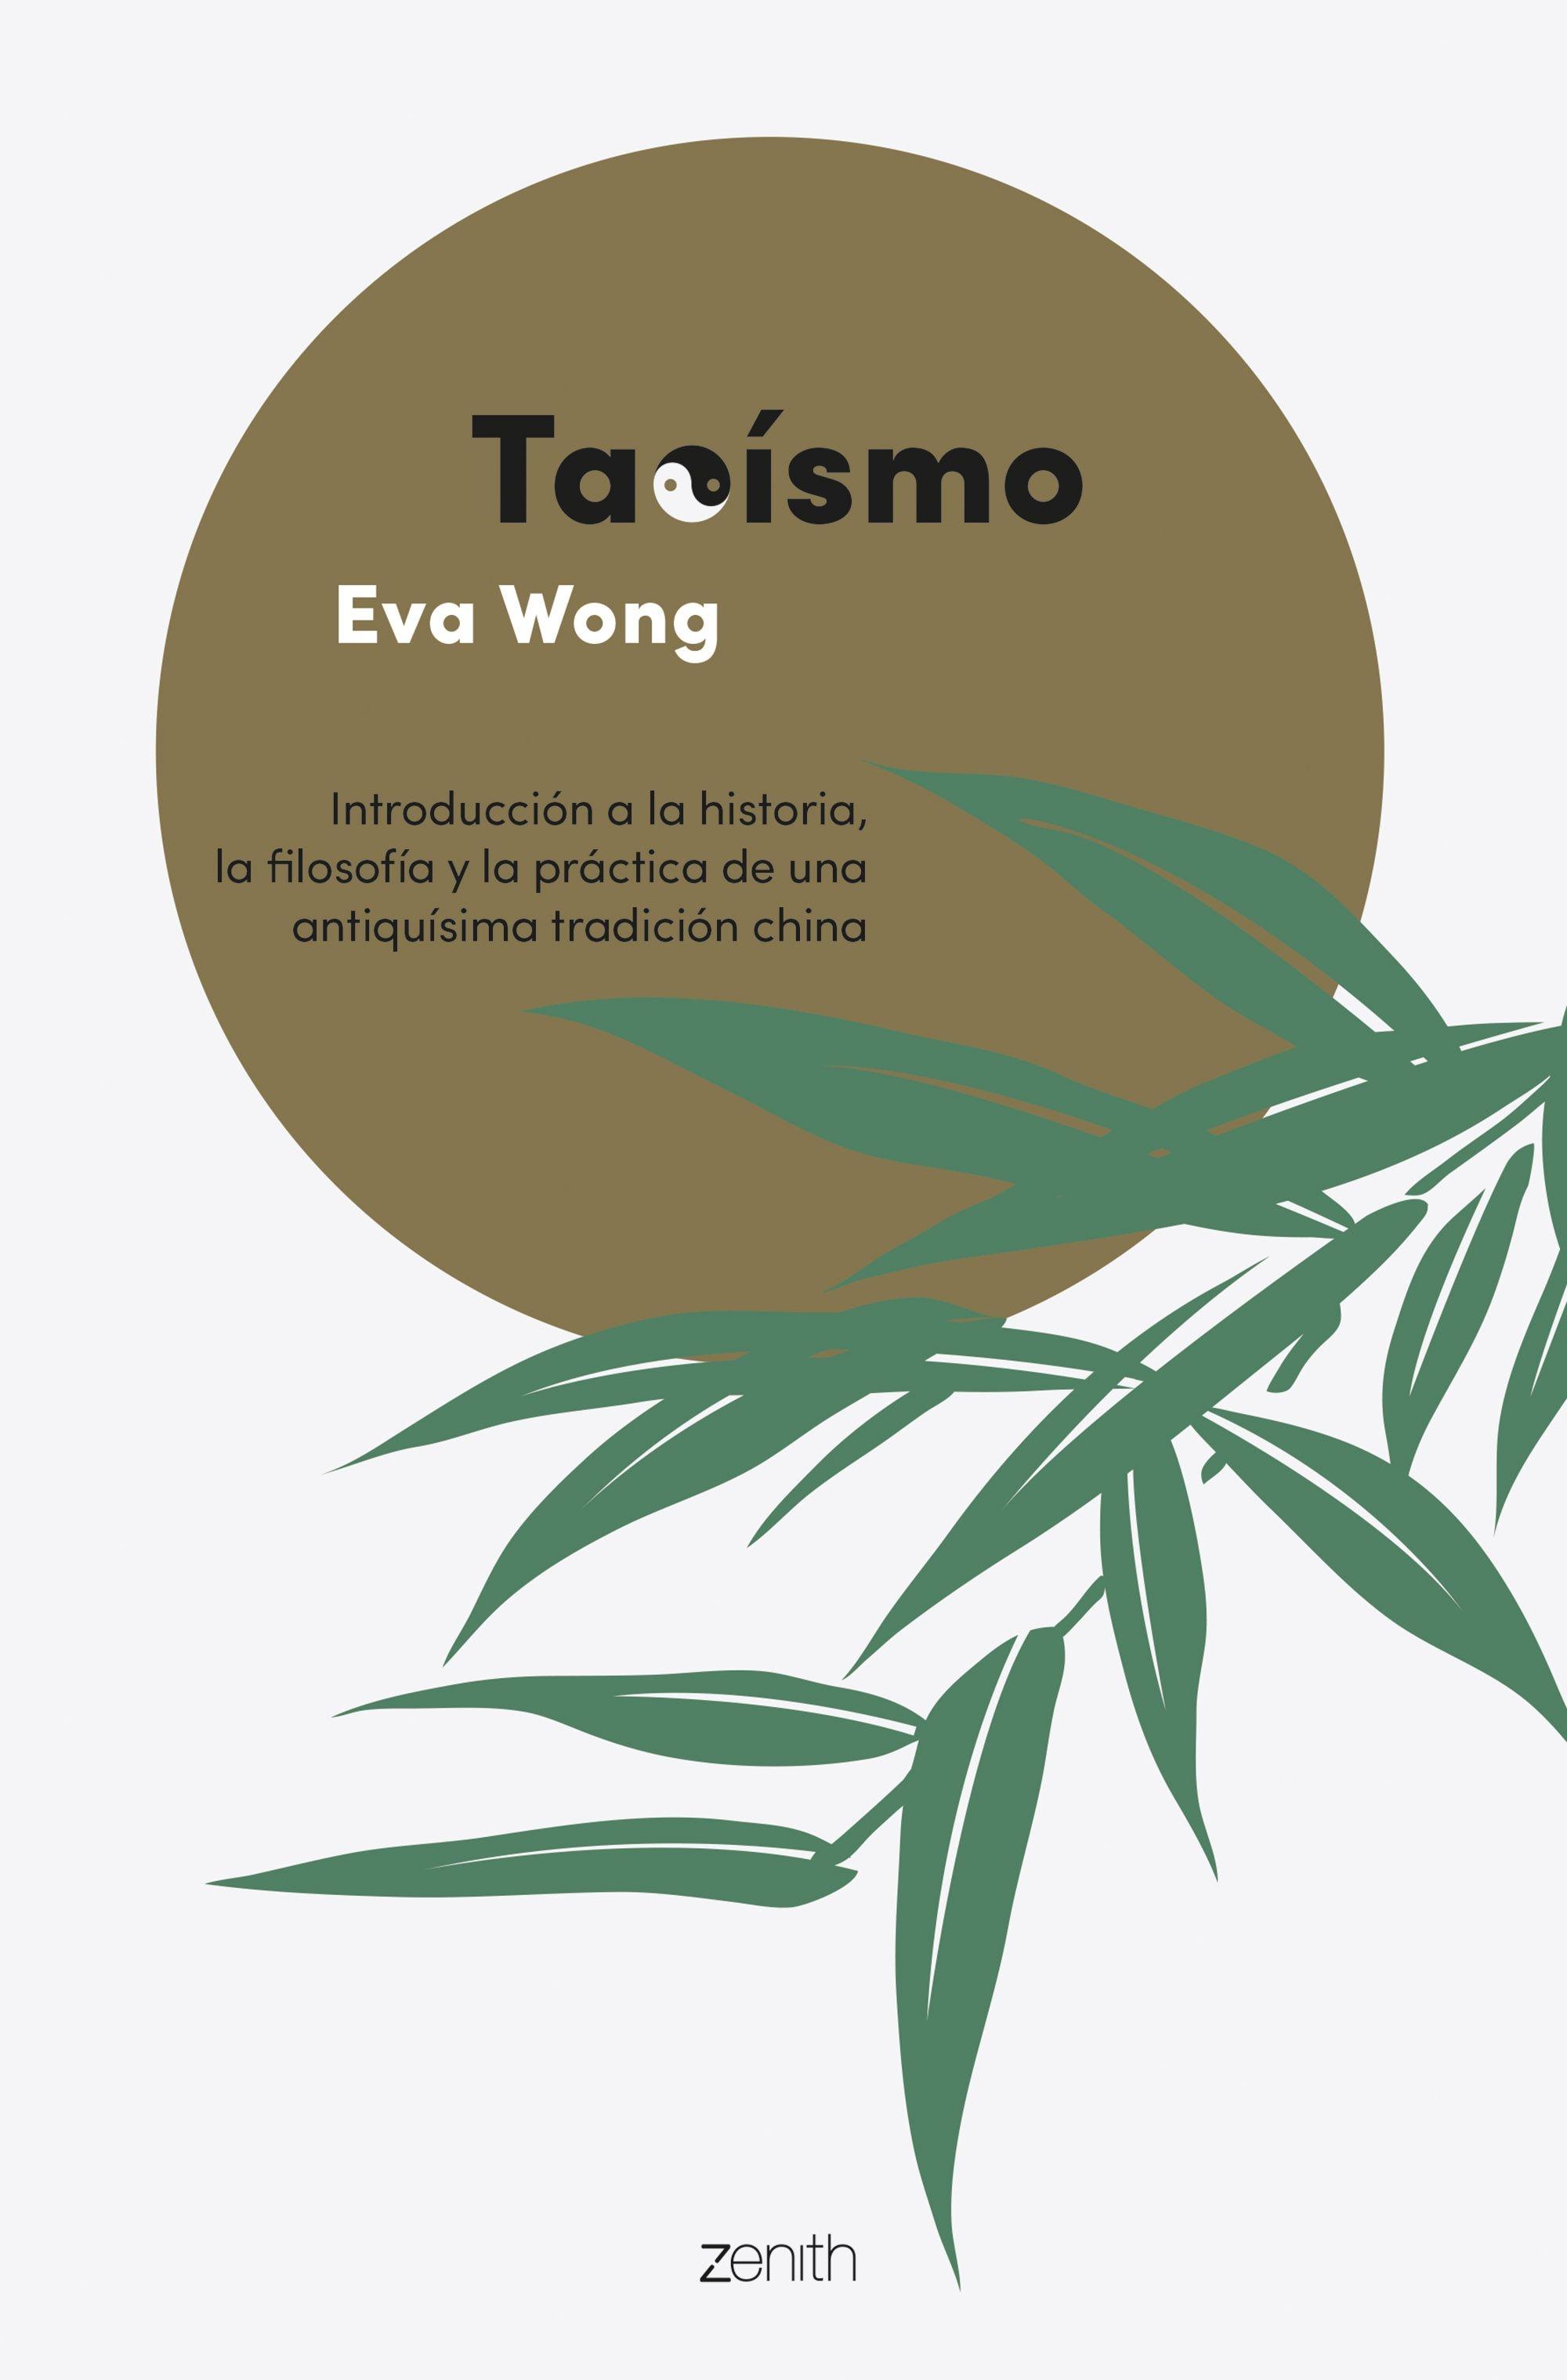 Taoísmo "Inroducción a la historia, la filosofía y la práctica de una antiquísima"